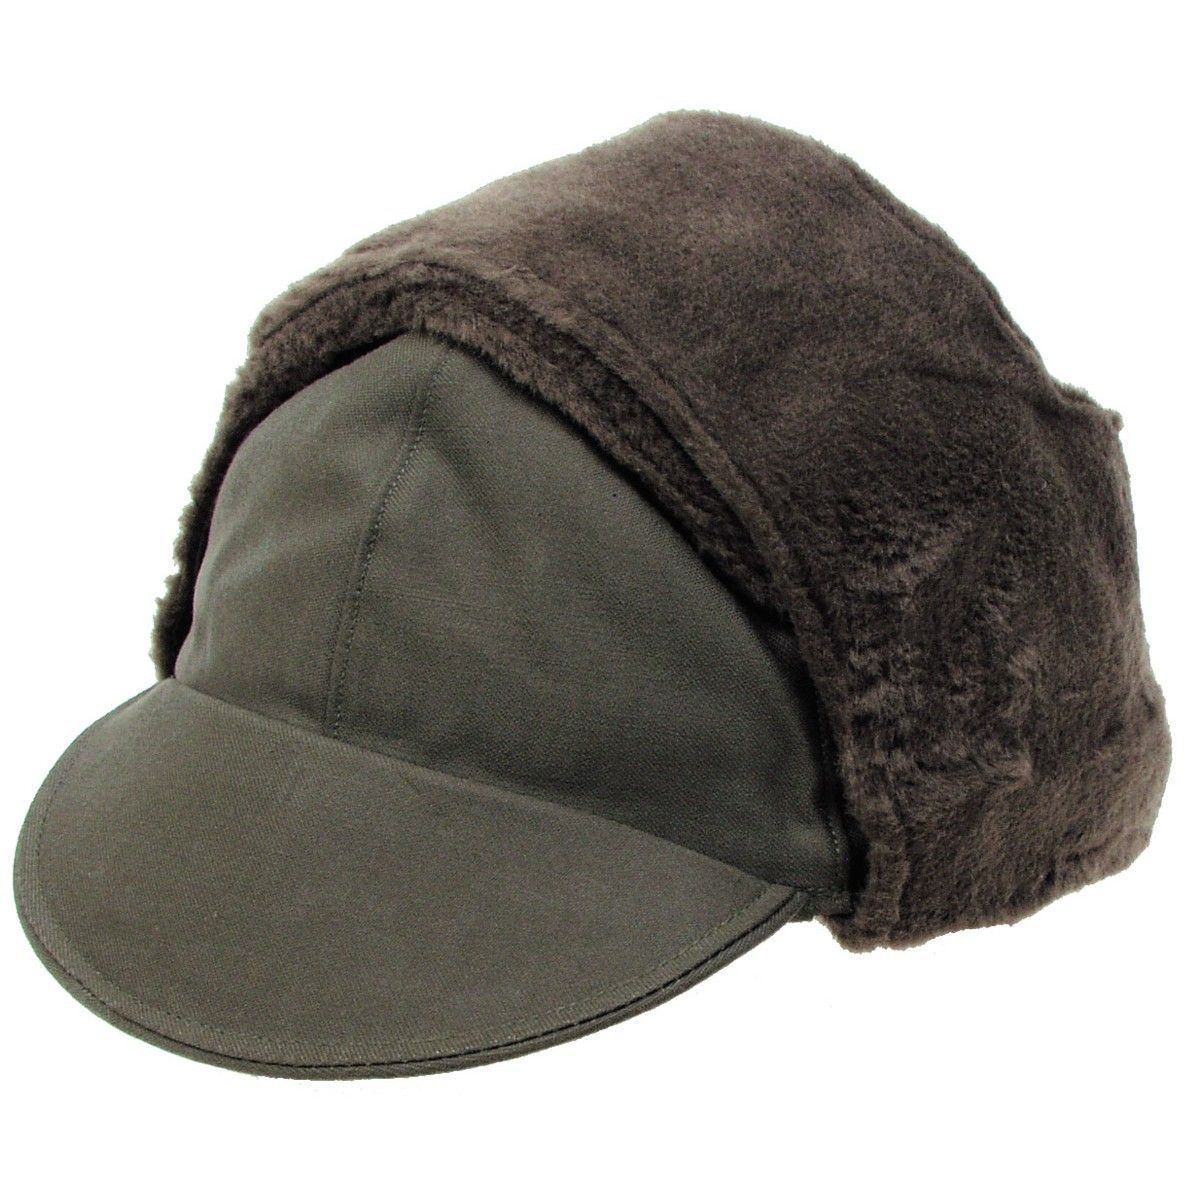 Niemiecka czapka zimowa wojskowa - oliwkowa 60